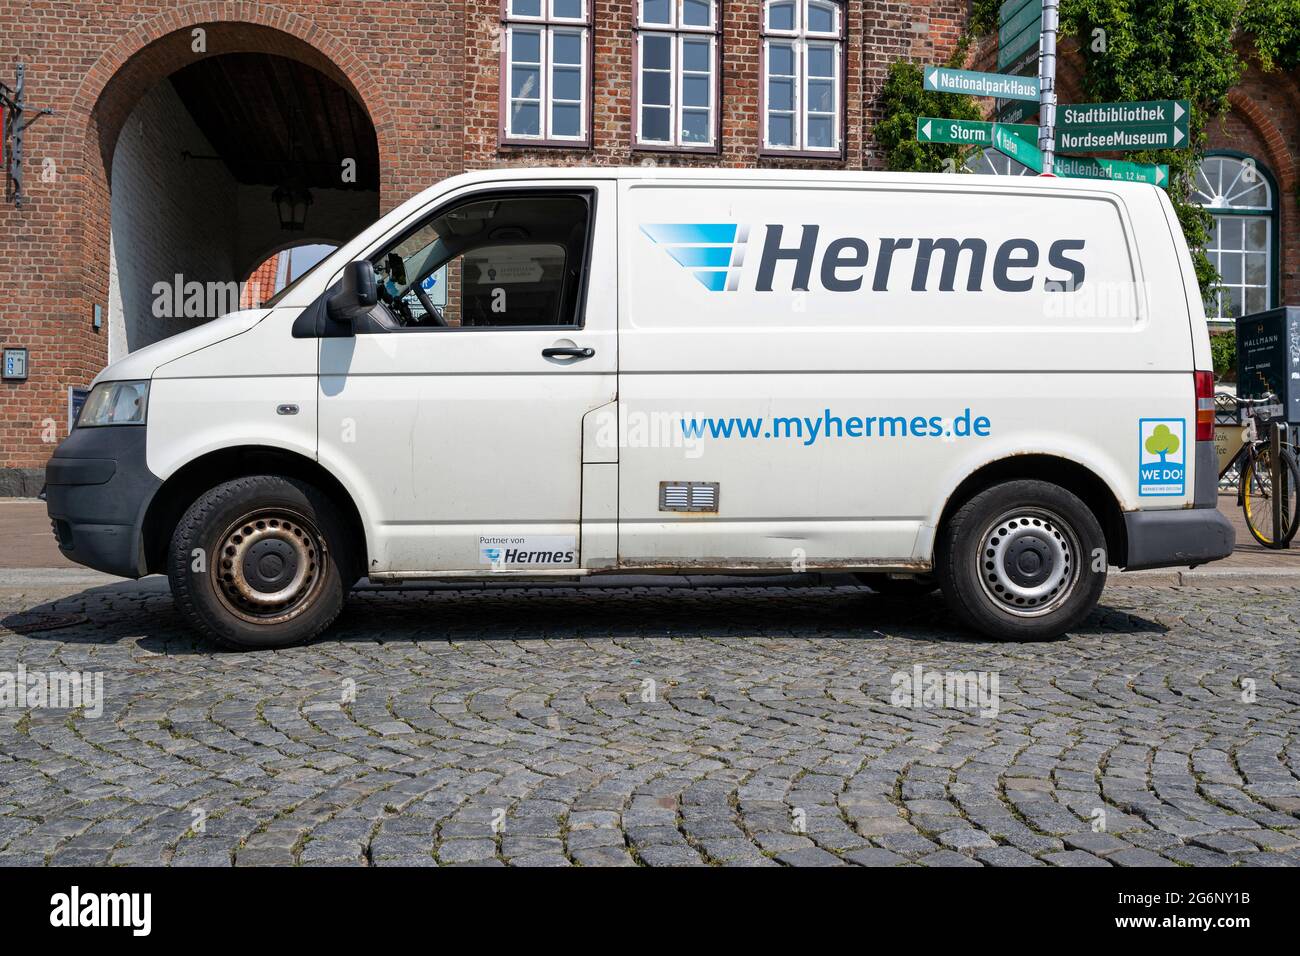 Hermes Volkswagen T5 delivery van Stock Photo